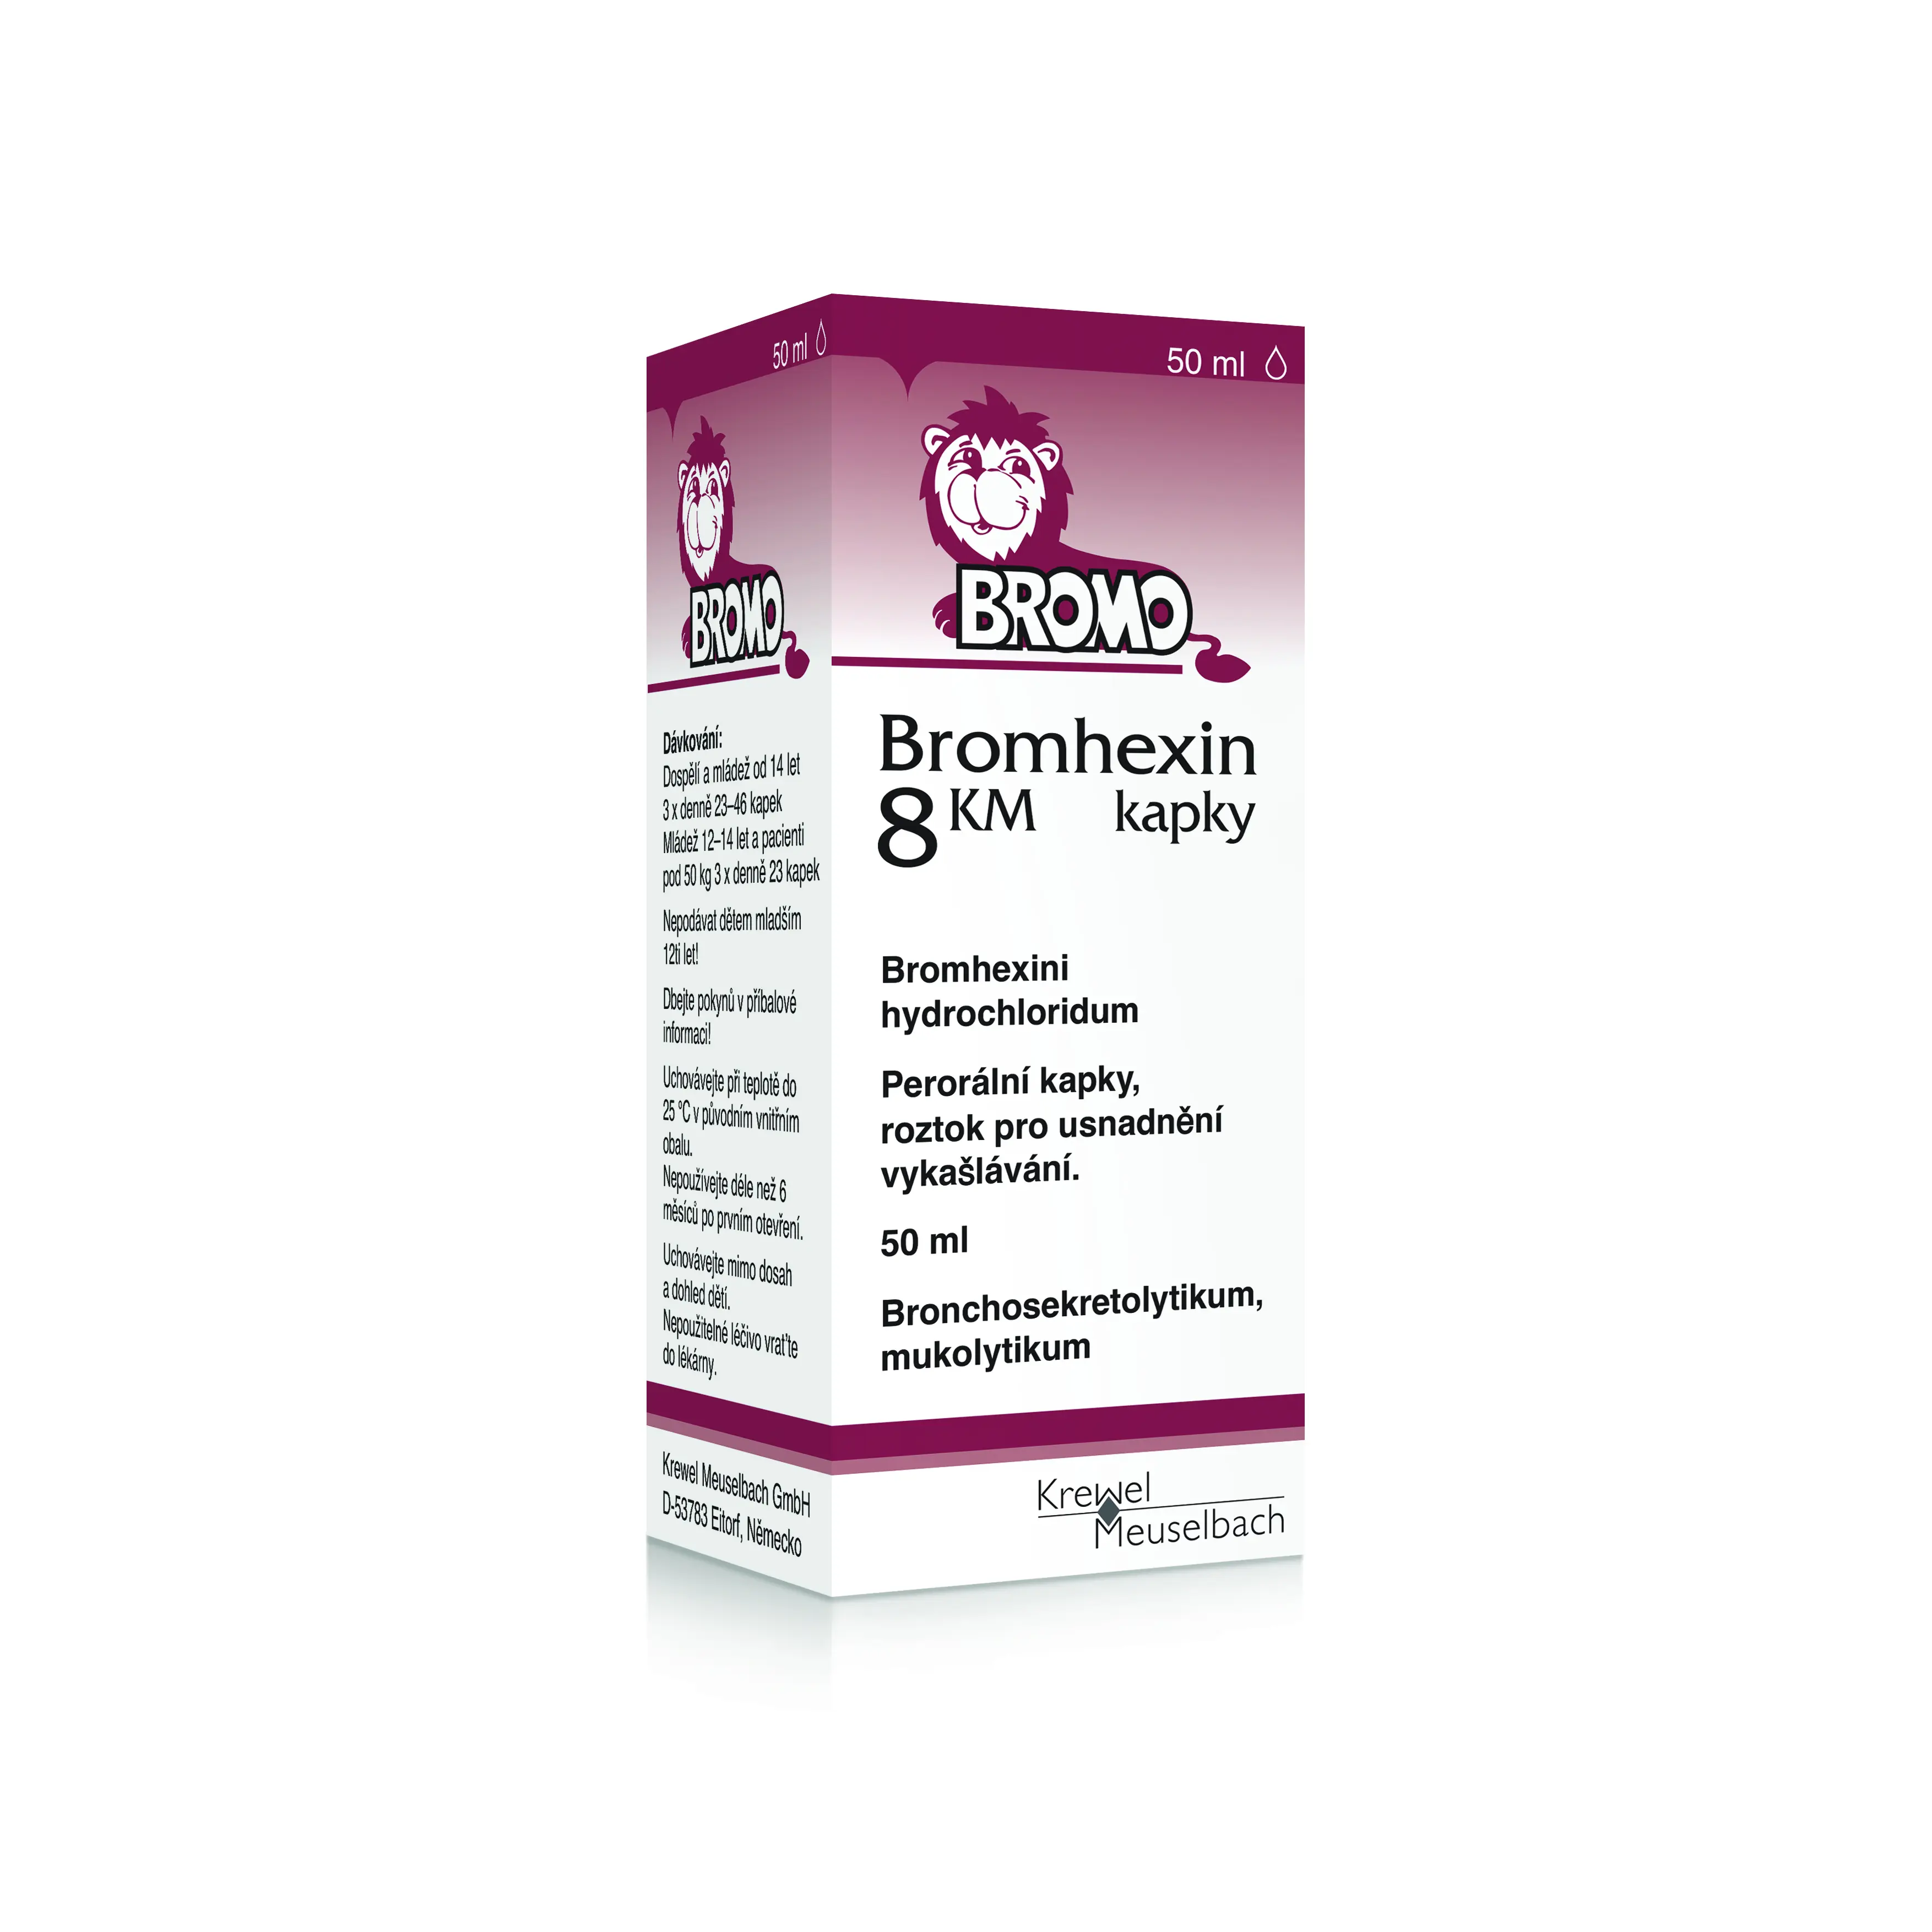 Bromhexin 8 KM kapky por.gtt.sol. 1 x 50 ml x 8 mg/ml